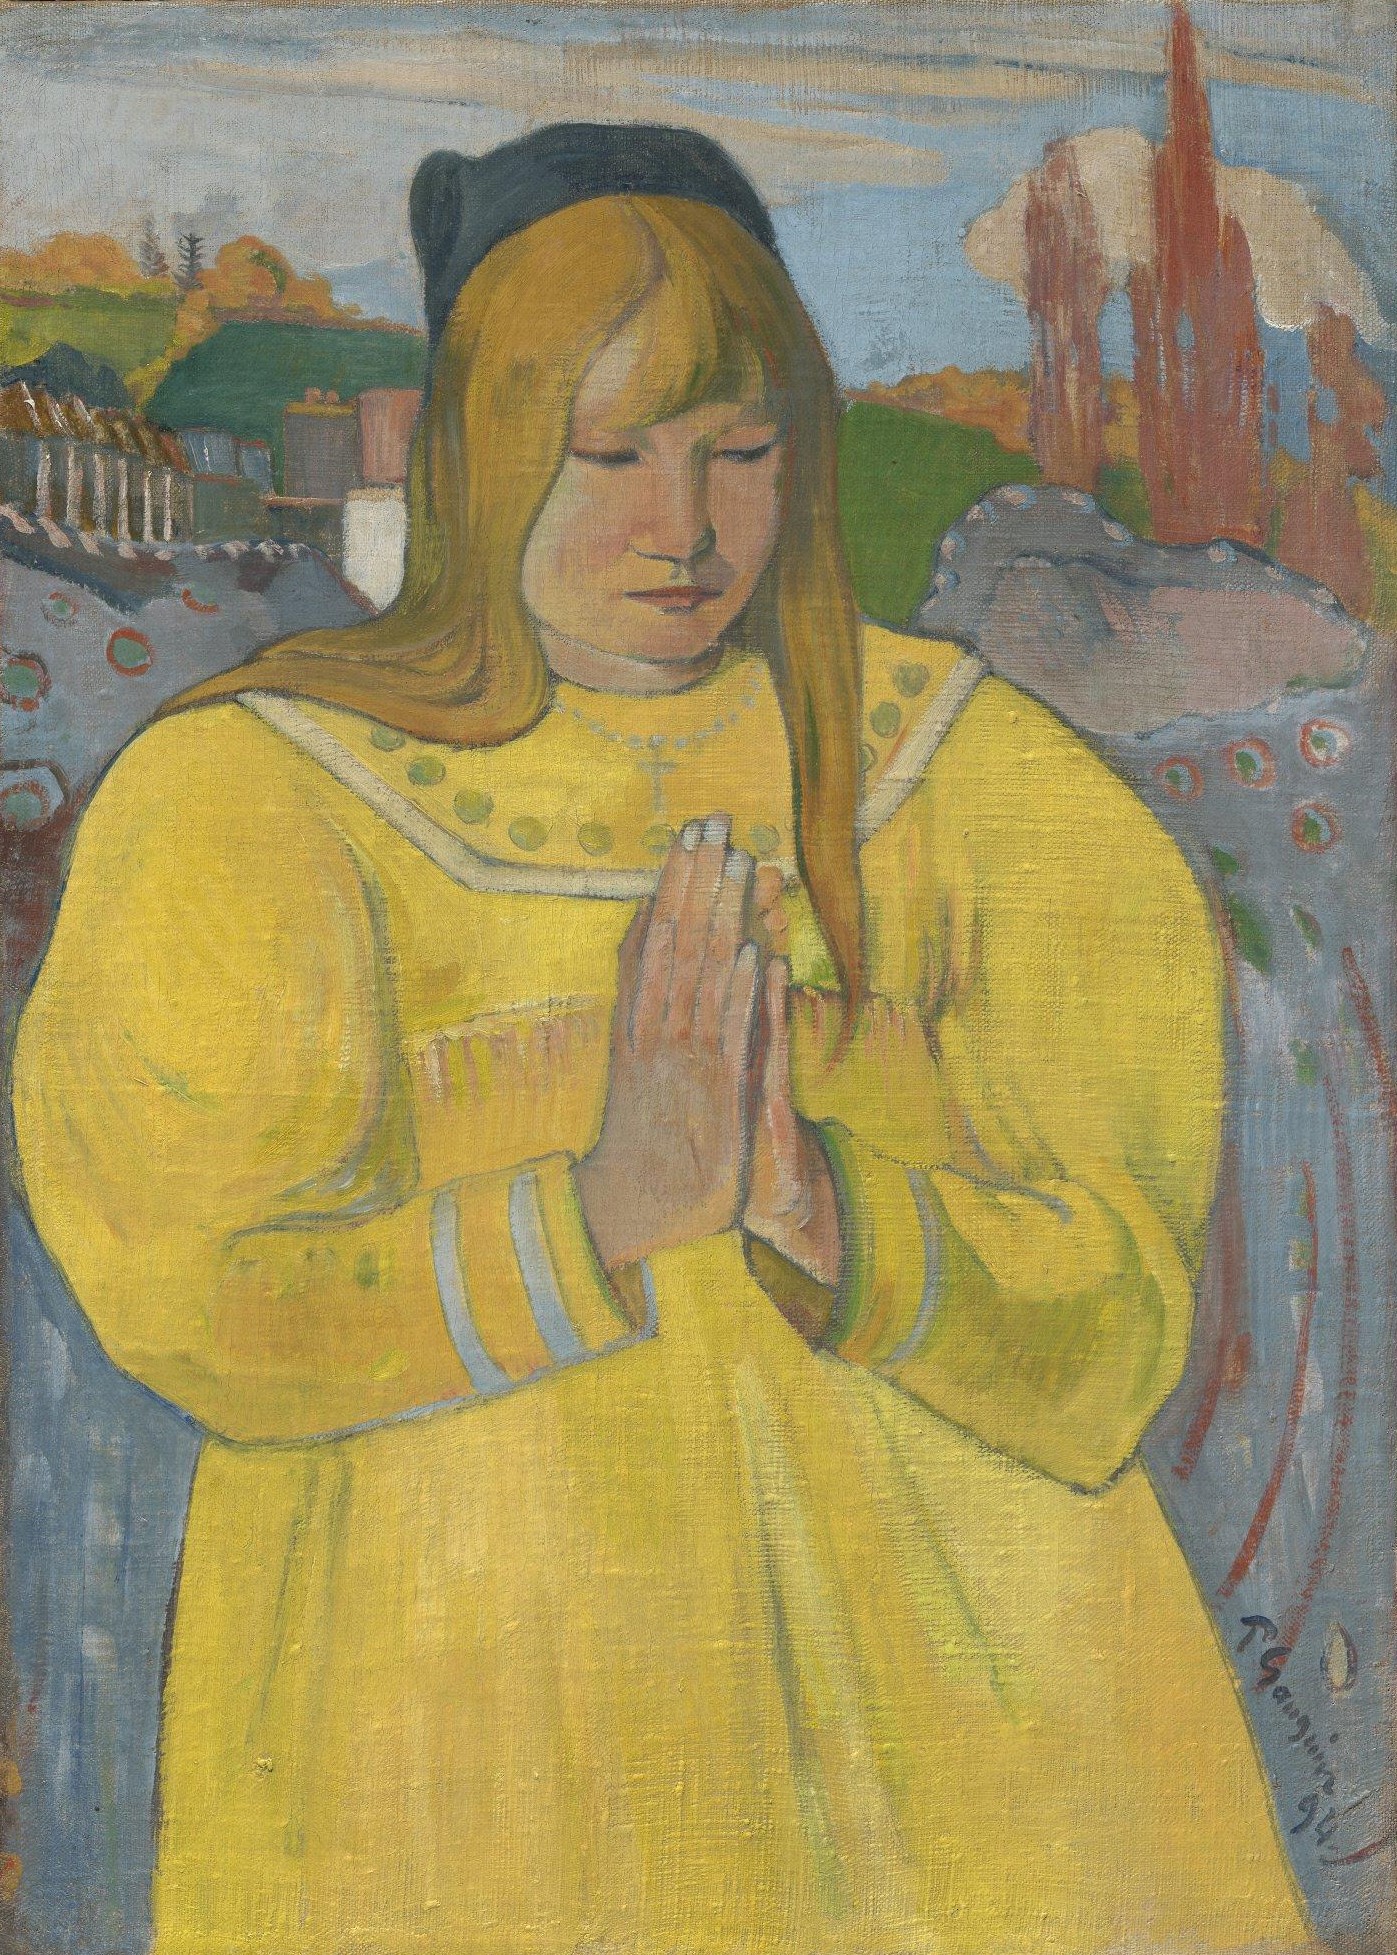 キリスト教徒の少女 by Paul Gauguin - 1894 - 89.9 x 71.3 cm 